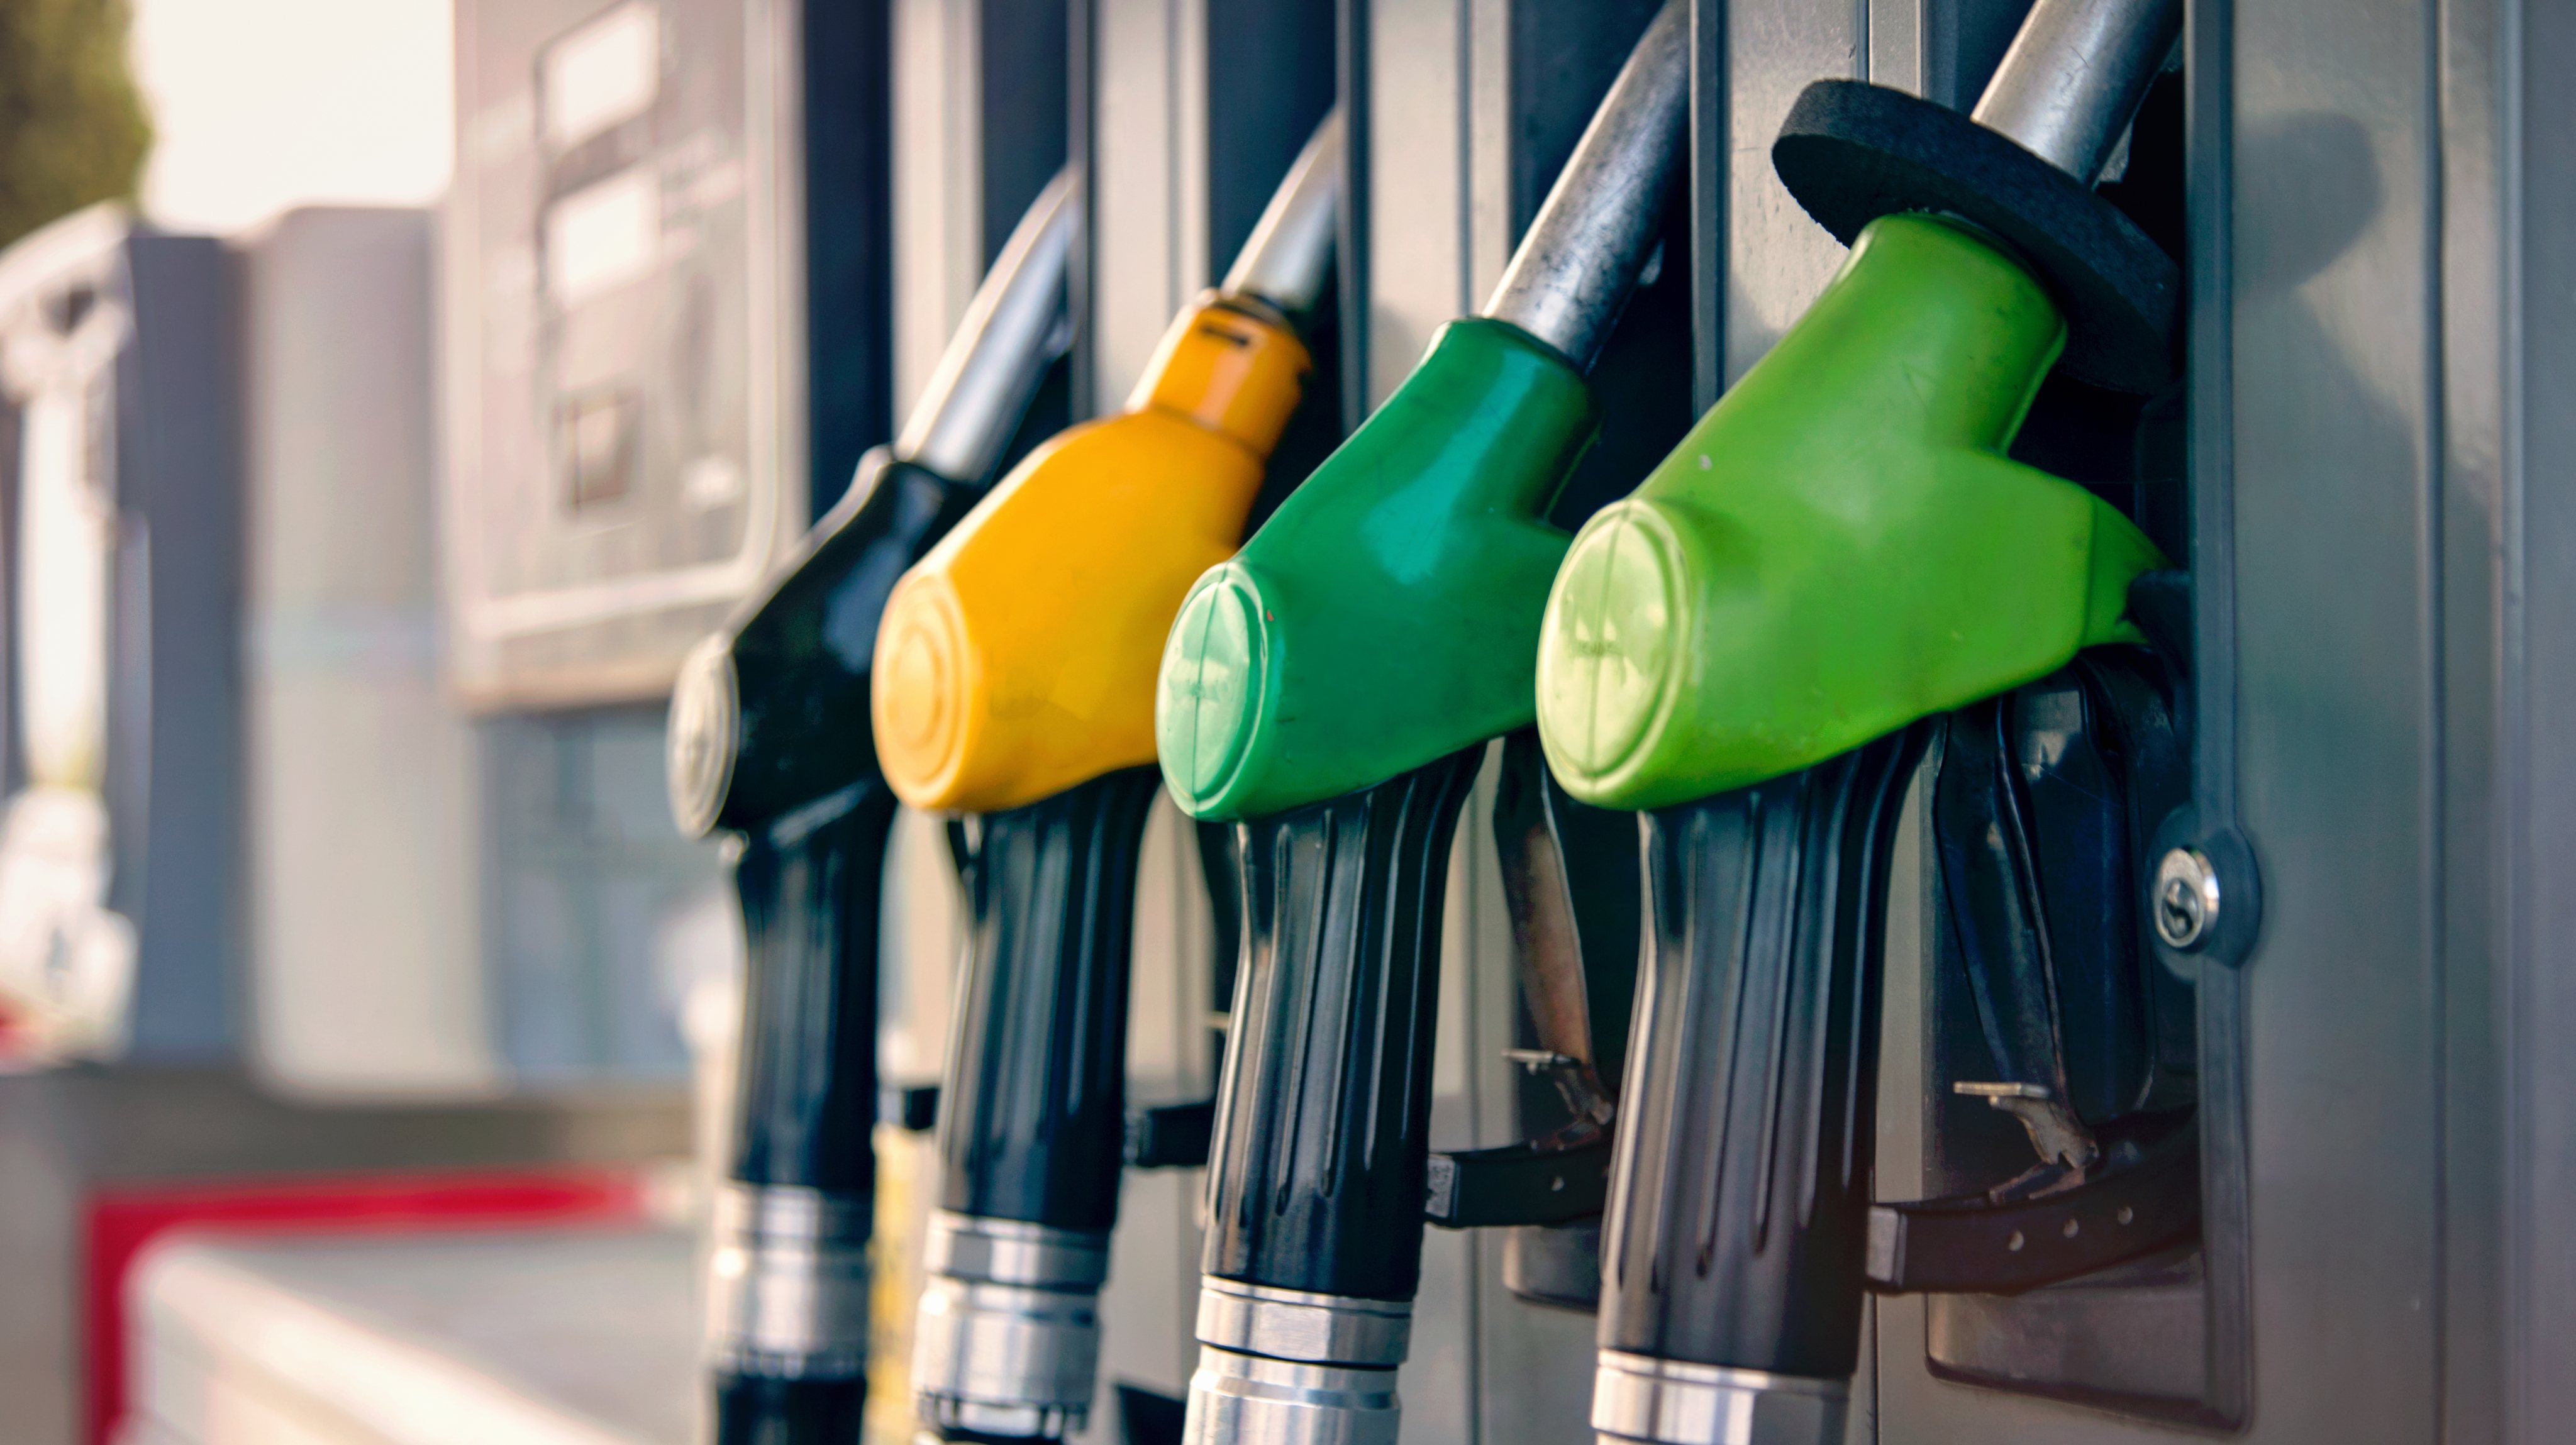 Preço médio semanal da ERSE subiu 0,2% para a gasolina e desceu 1,2% para o gasóleo